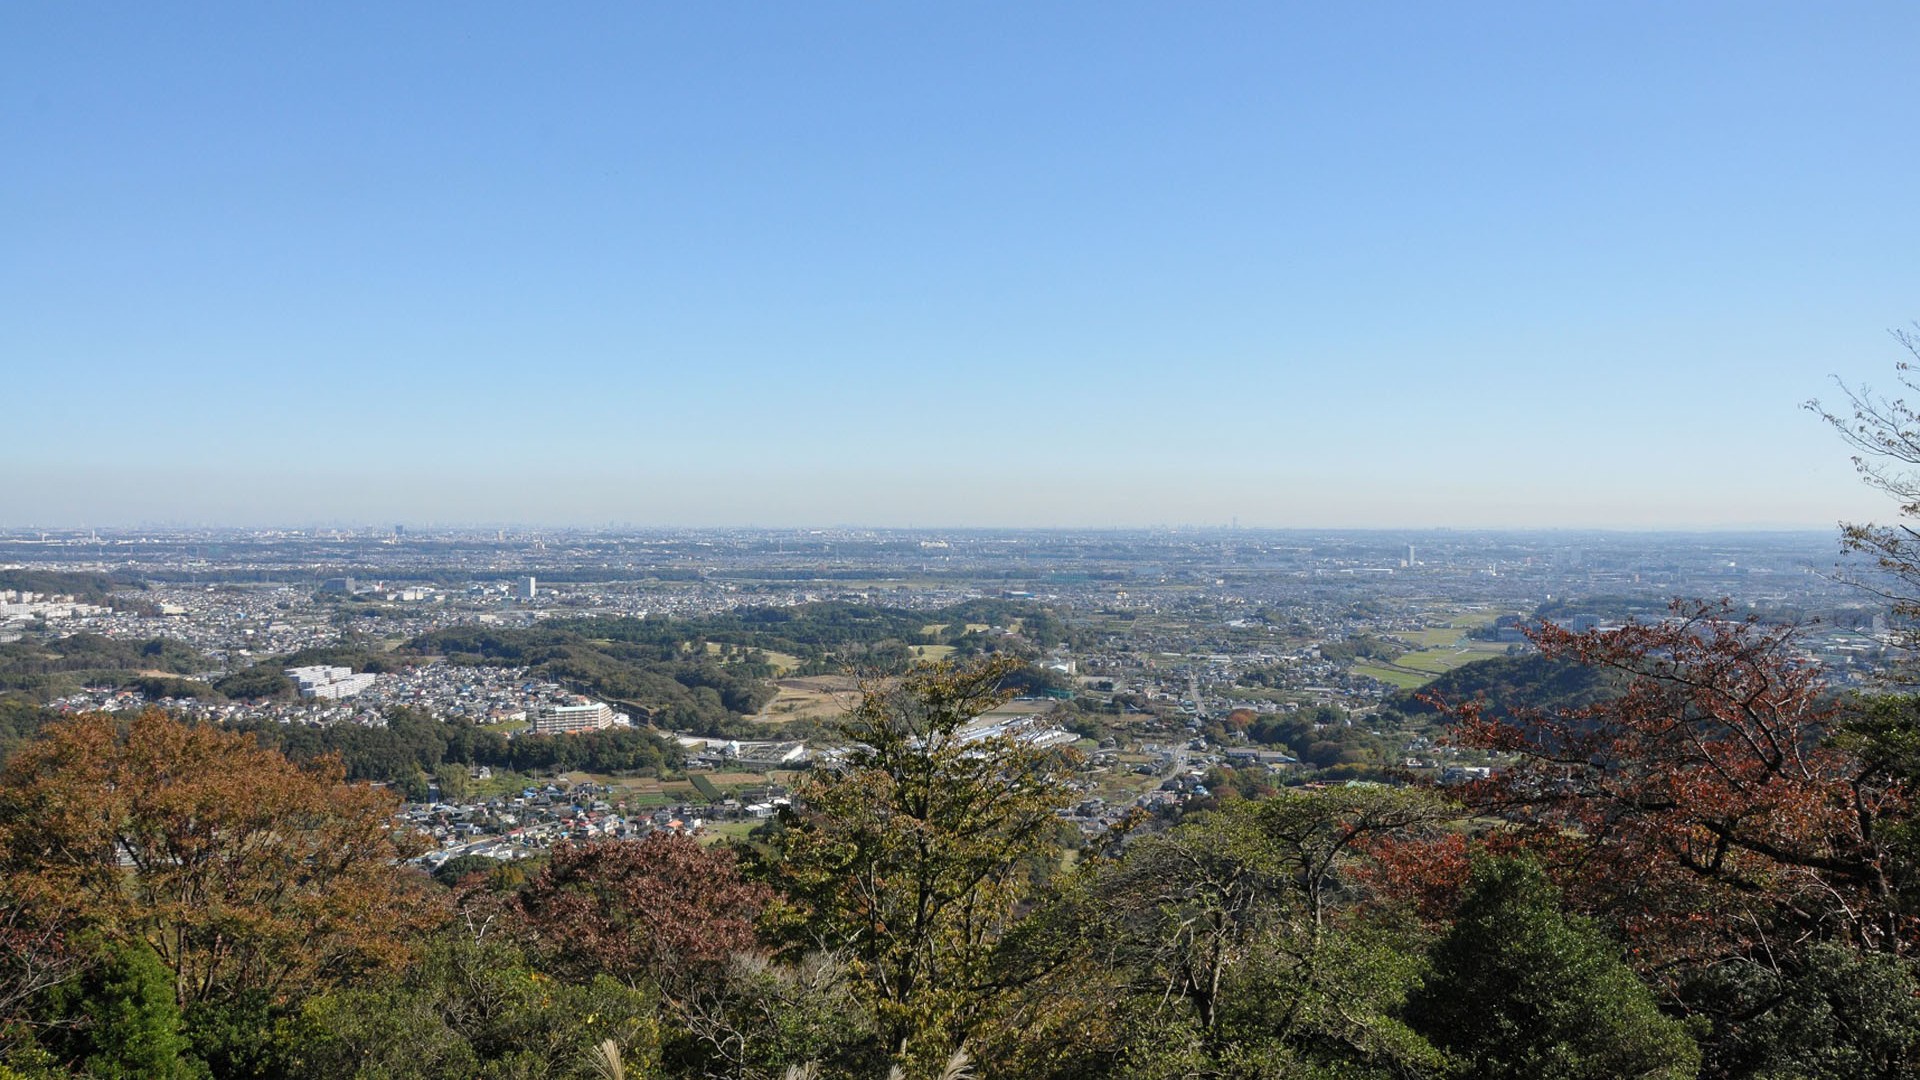 Observatory at the peak of Mt Hakusan